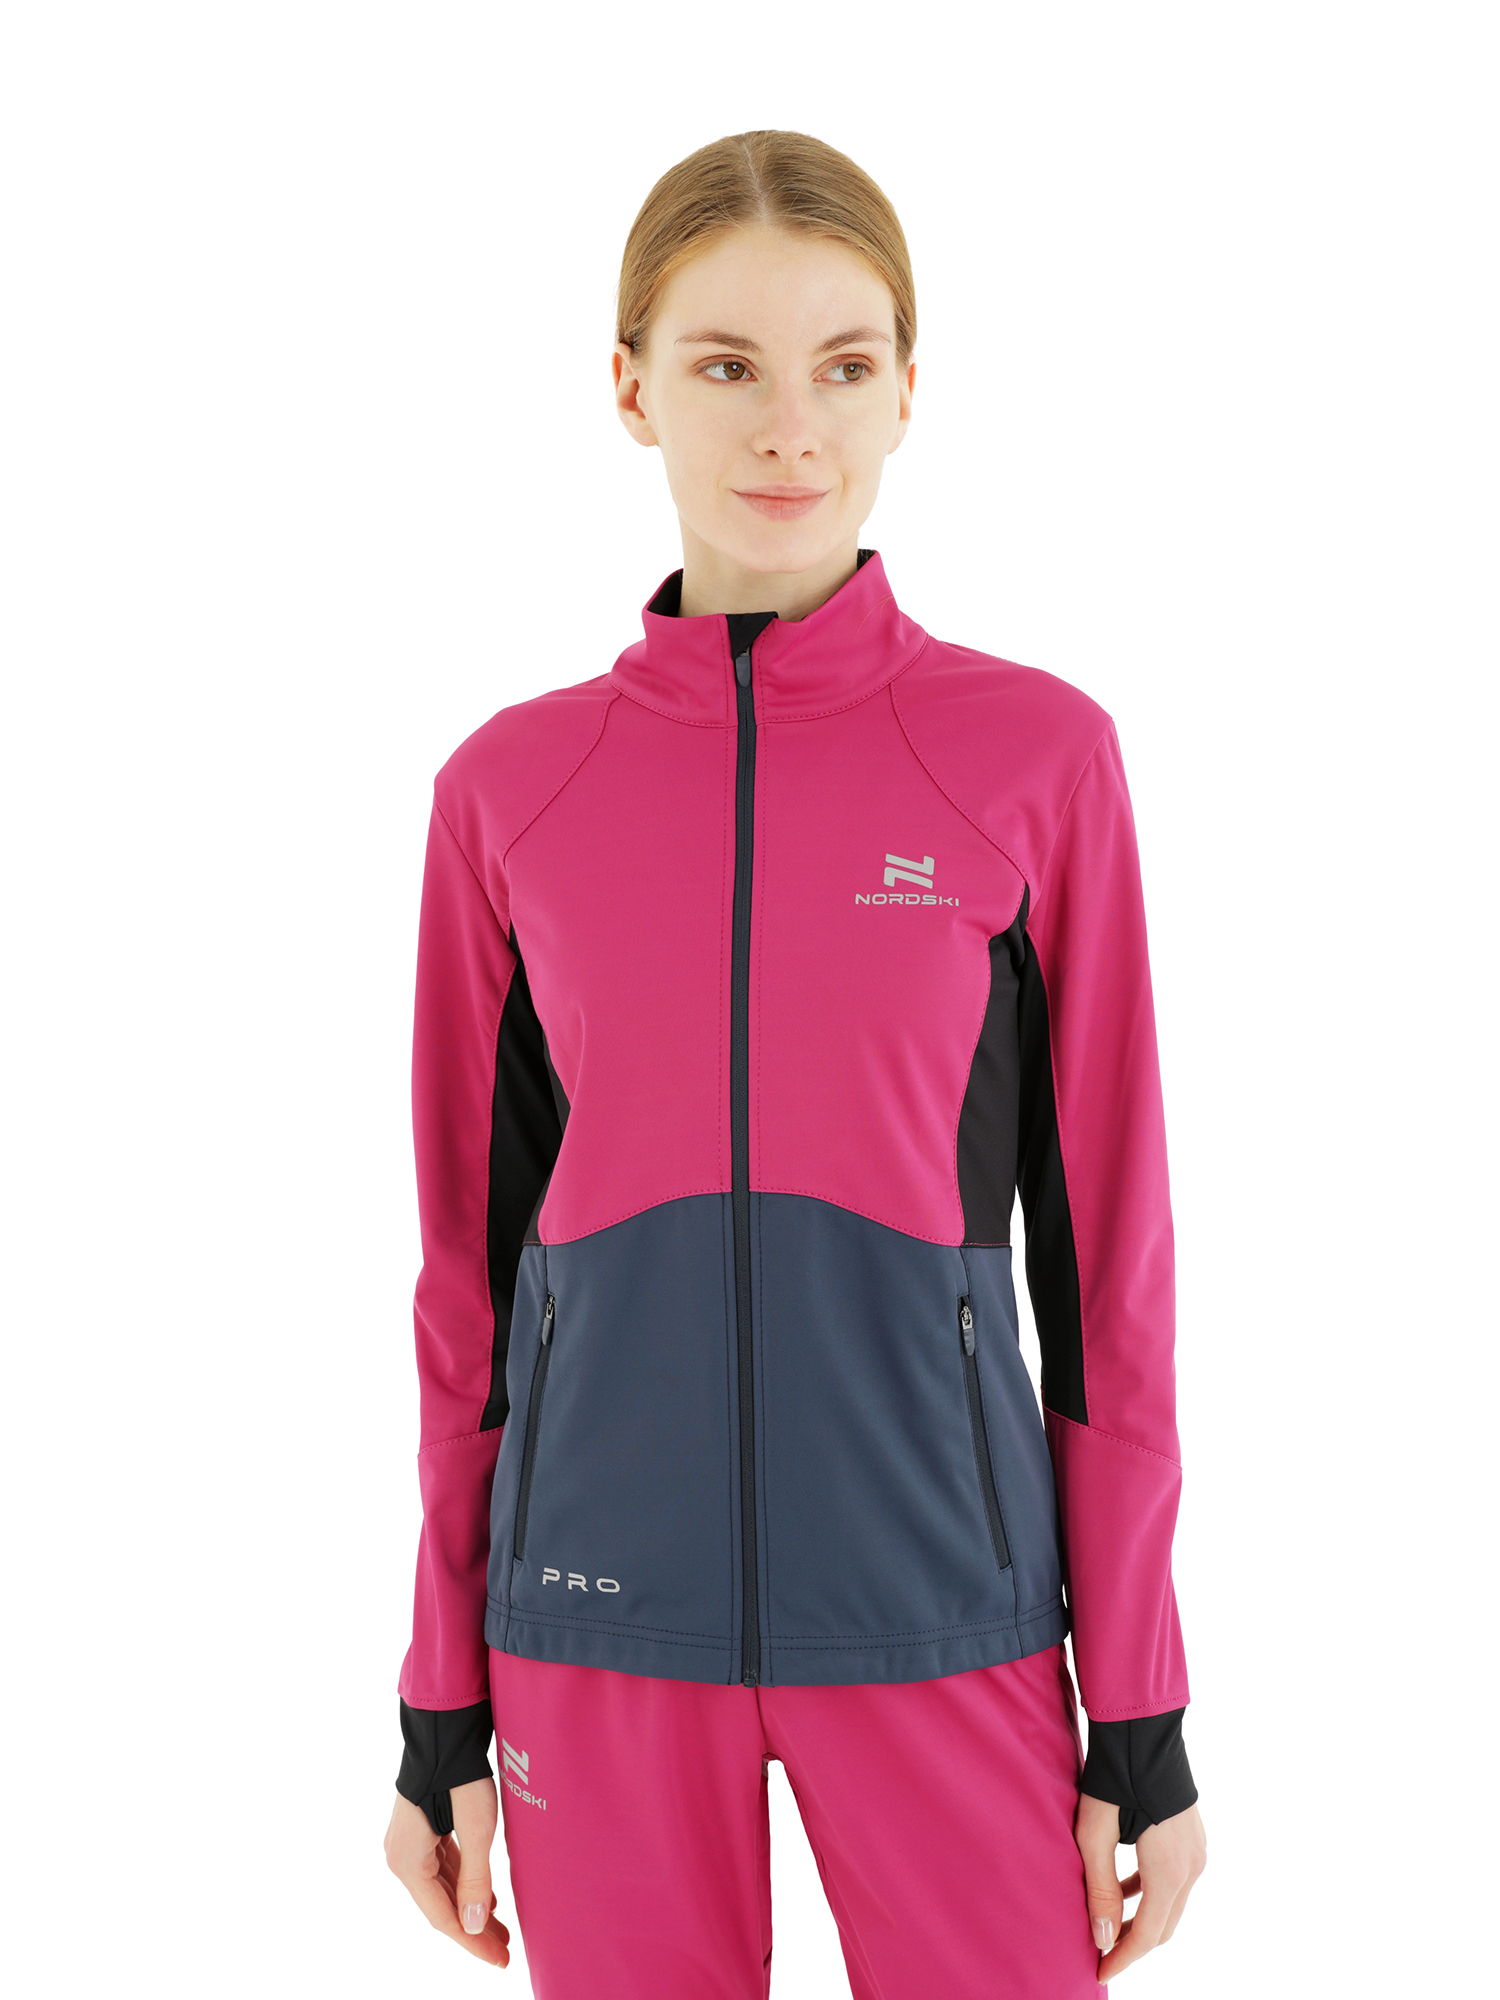 Спортивная куртка женская NordSki Pro W розовая M